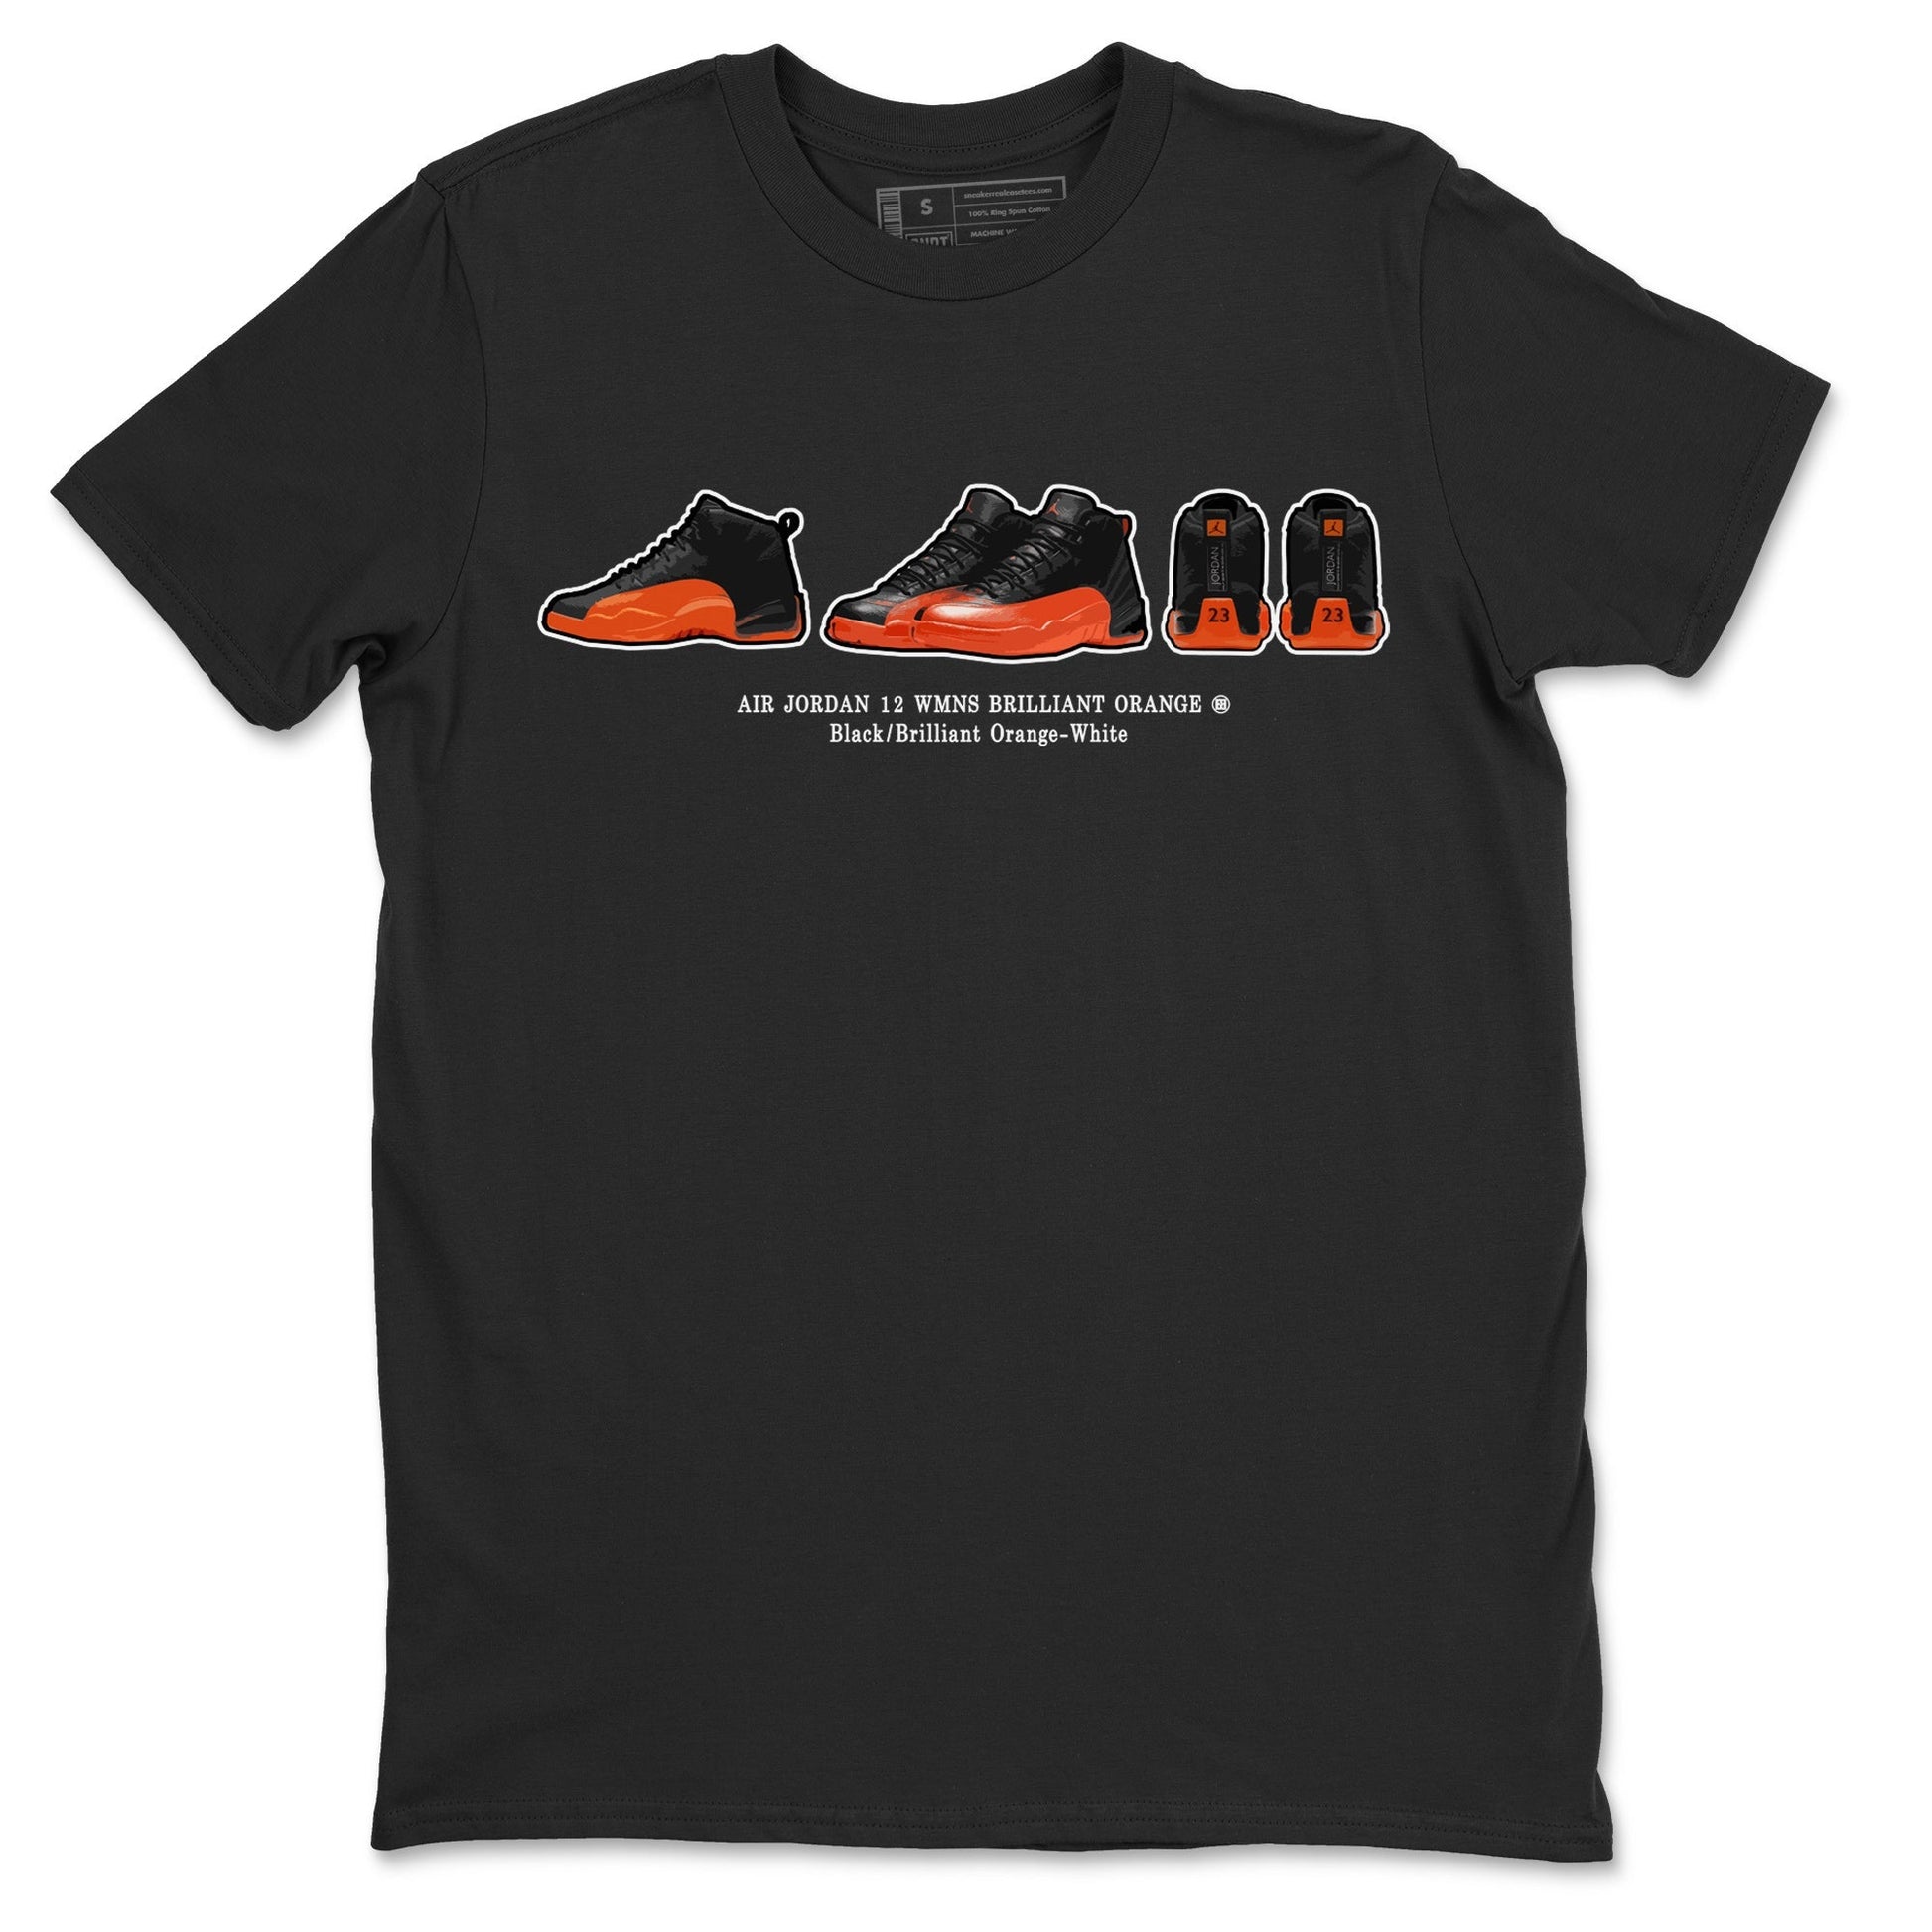 Air Jordan 12 Brilliant Orange Sneaker Match Tees Sneaker Prelude t shirt Air Jordan 12 WMNS Brilliant Orange Streetwear Sneaker Shirt Unisex Shirts Black 2